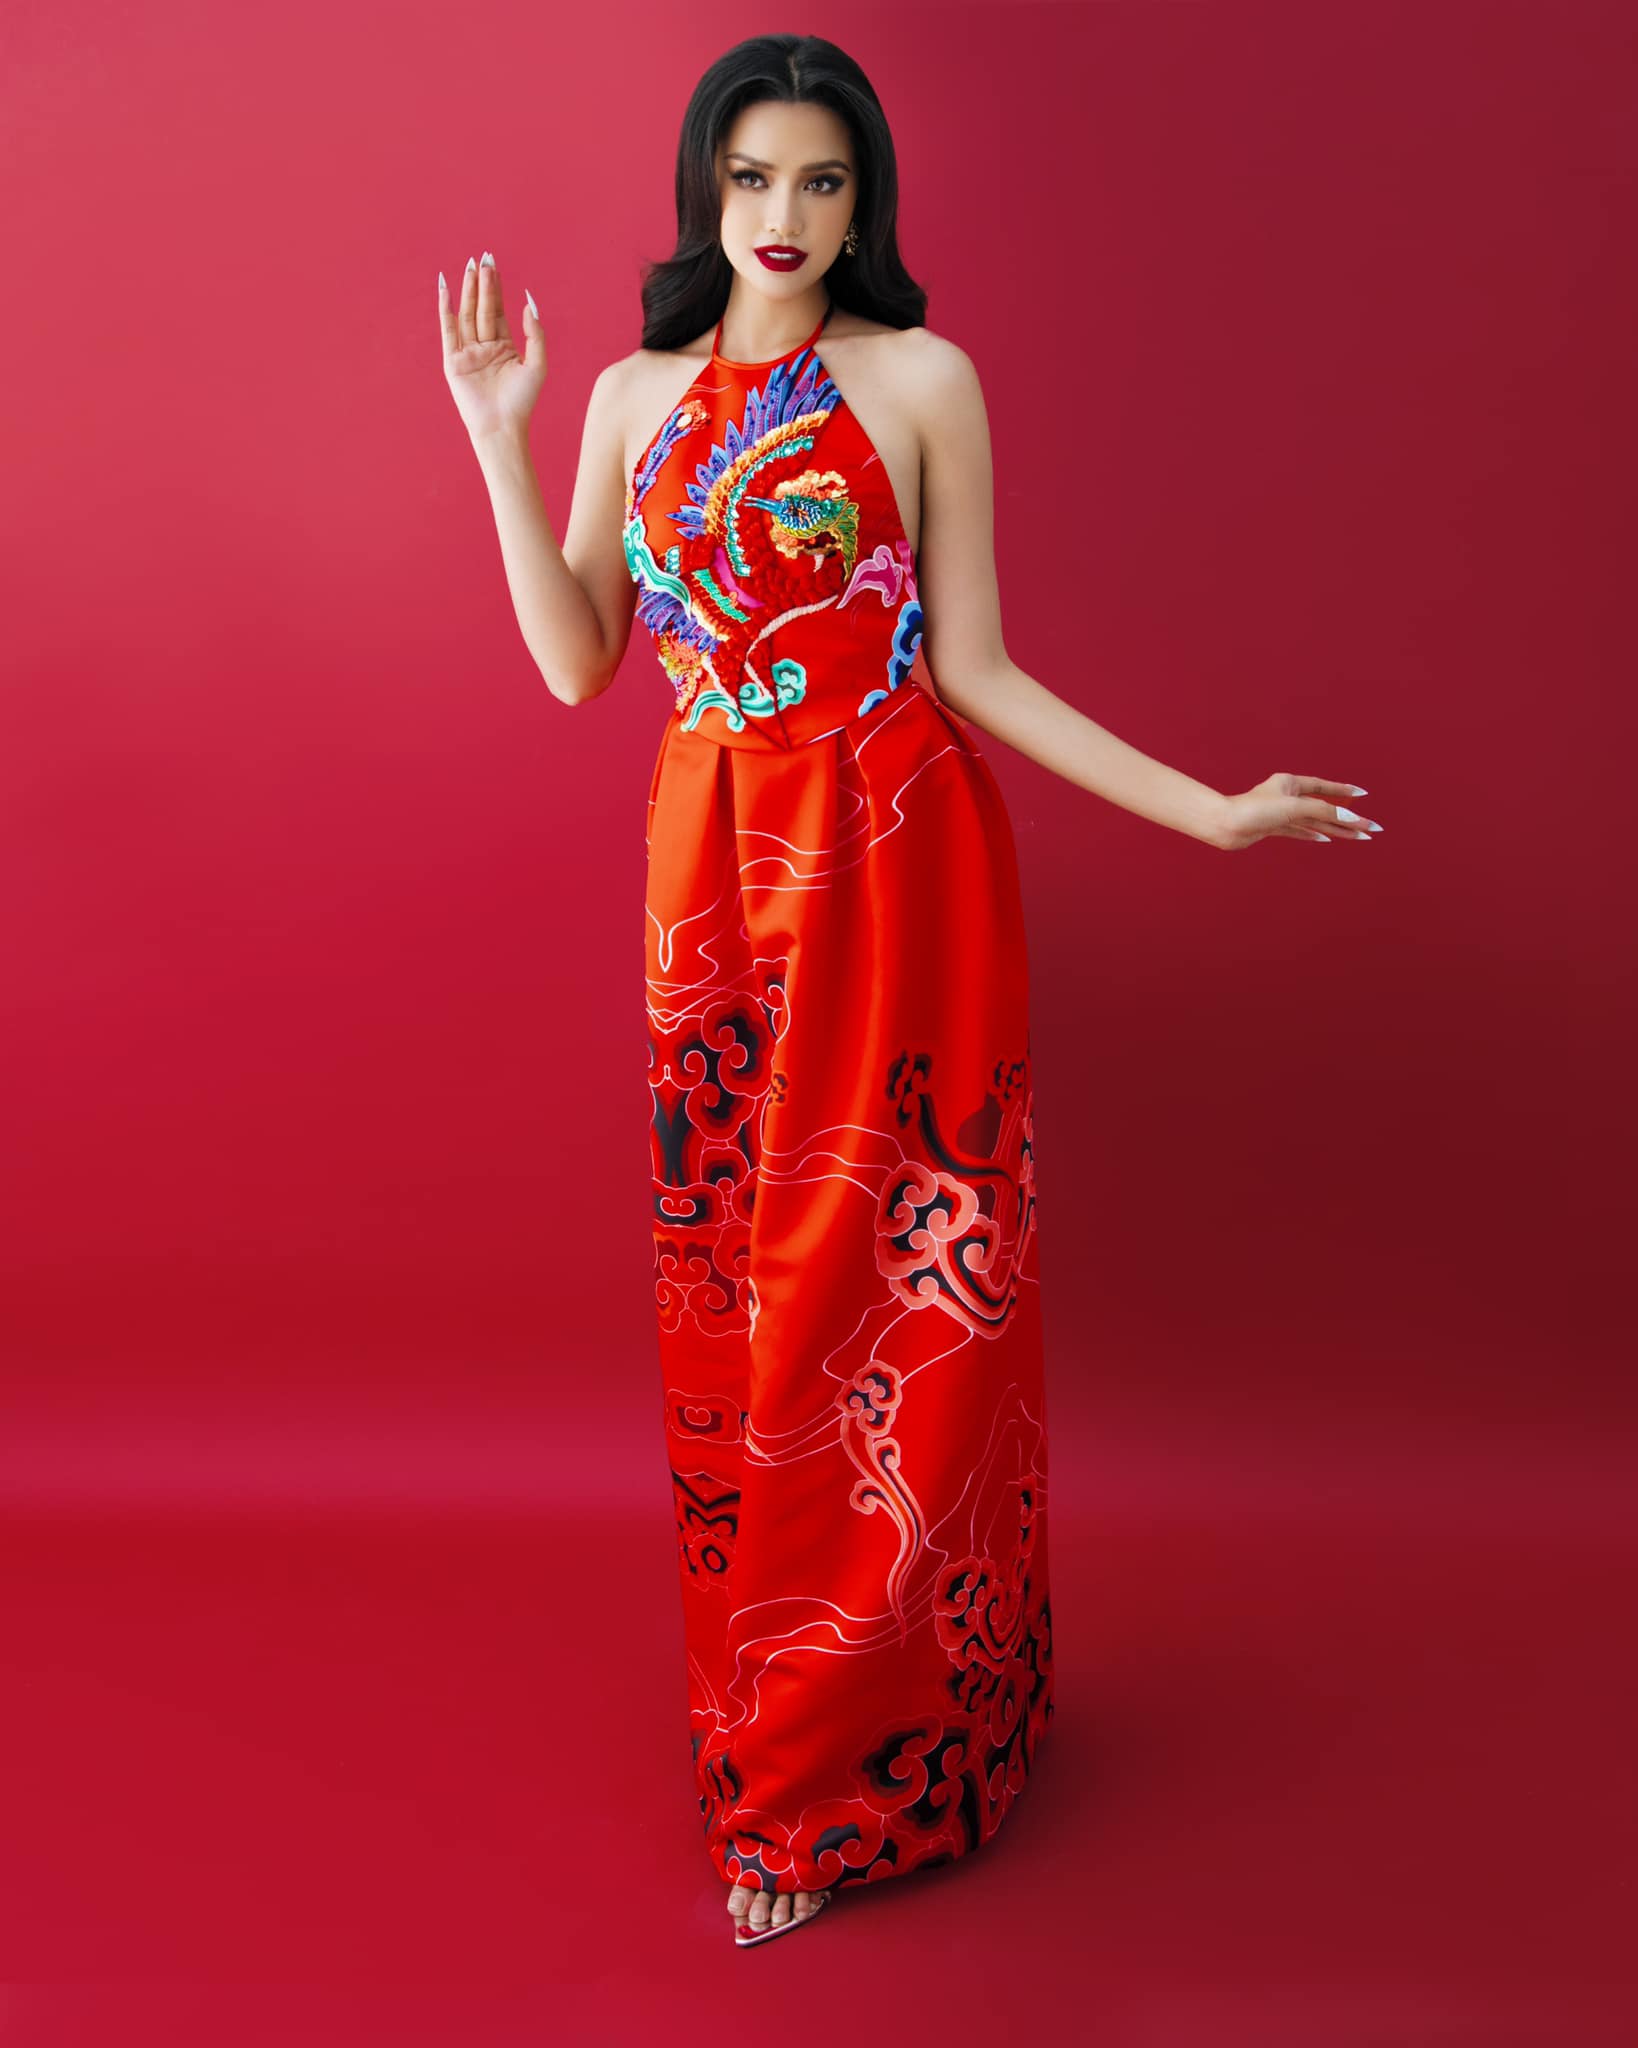 Hậu tin đồn out top 16, Ngọc Châu khiến fan lấy lại niềm tin với nhan sắc cực đỉnh trong trang phục Á Đông - ảnh 5